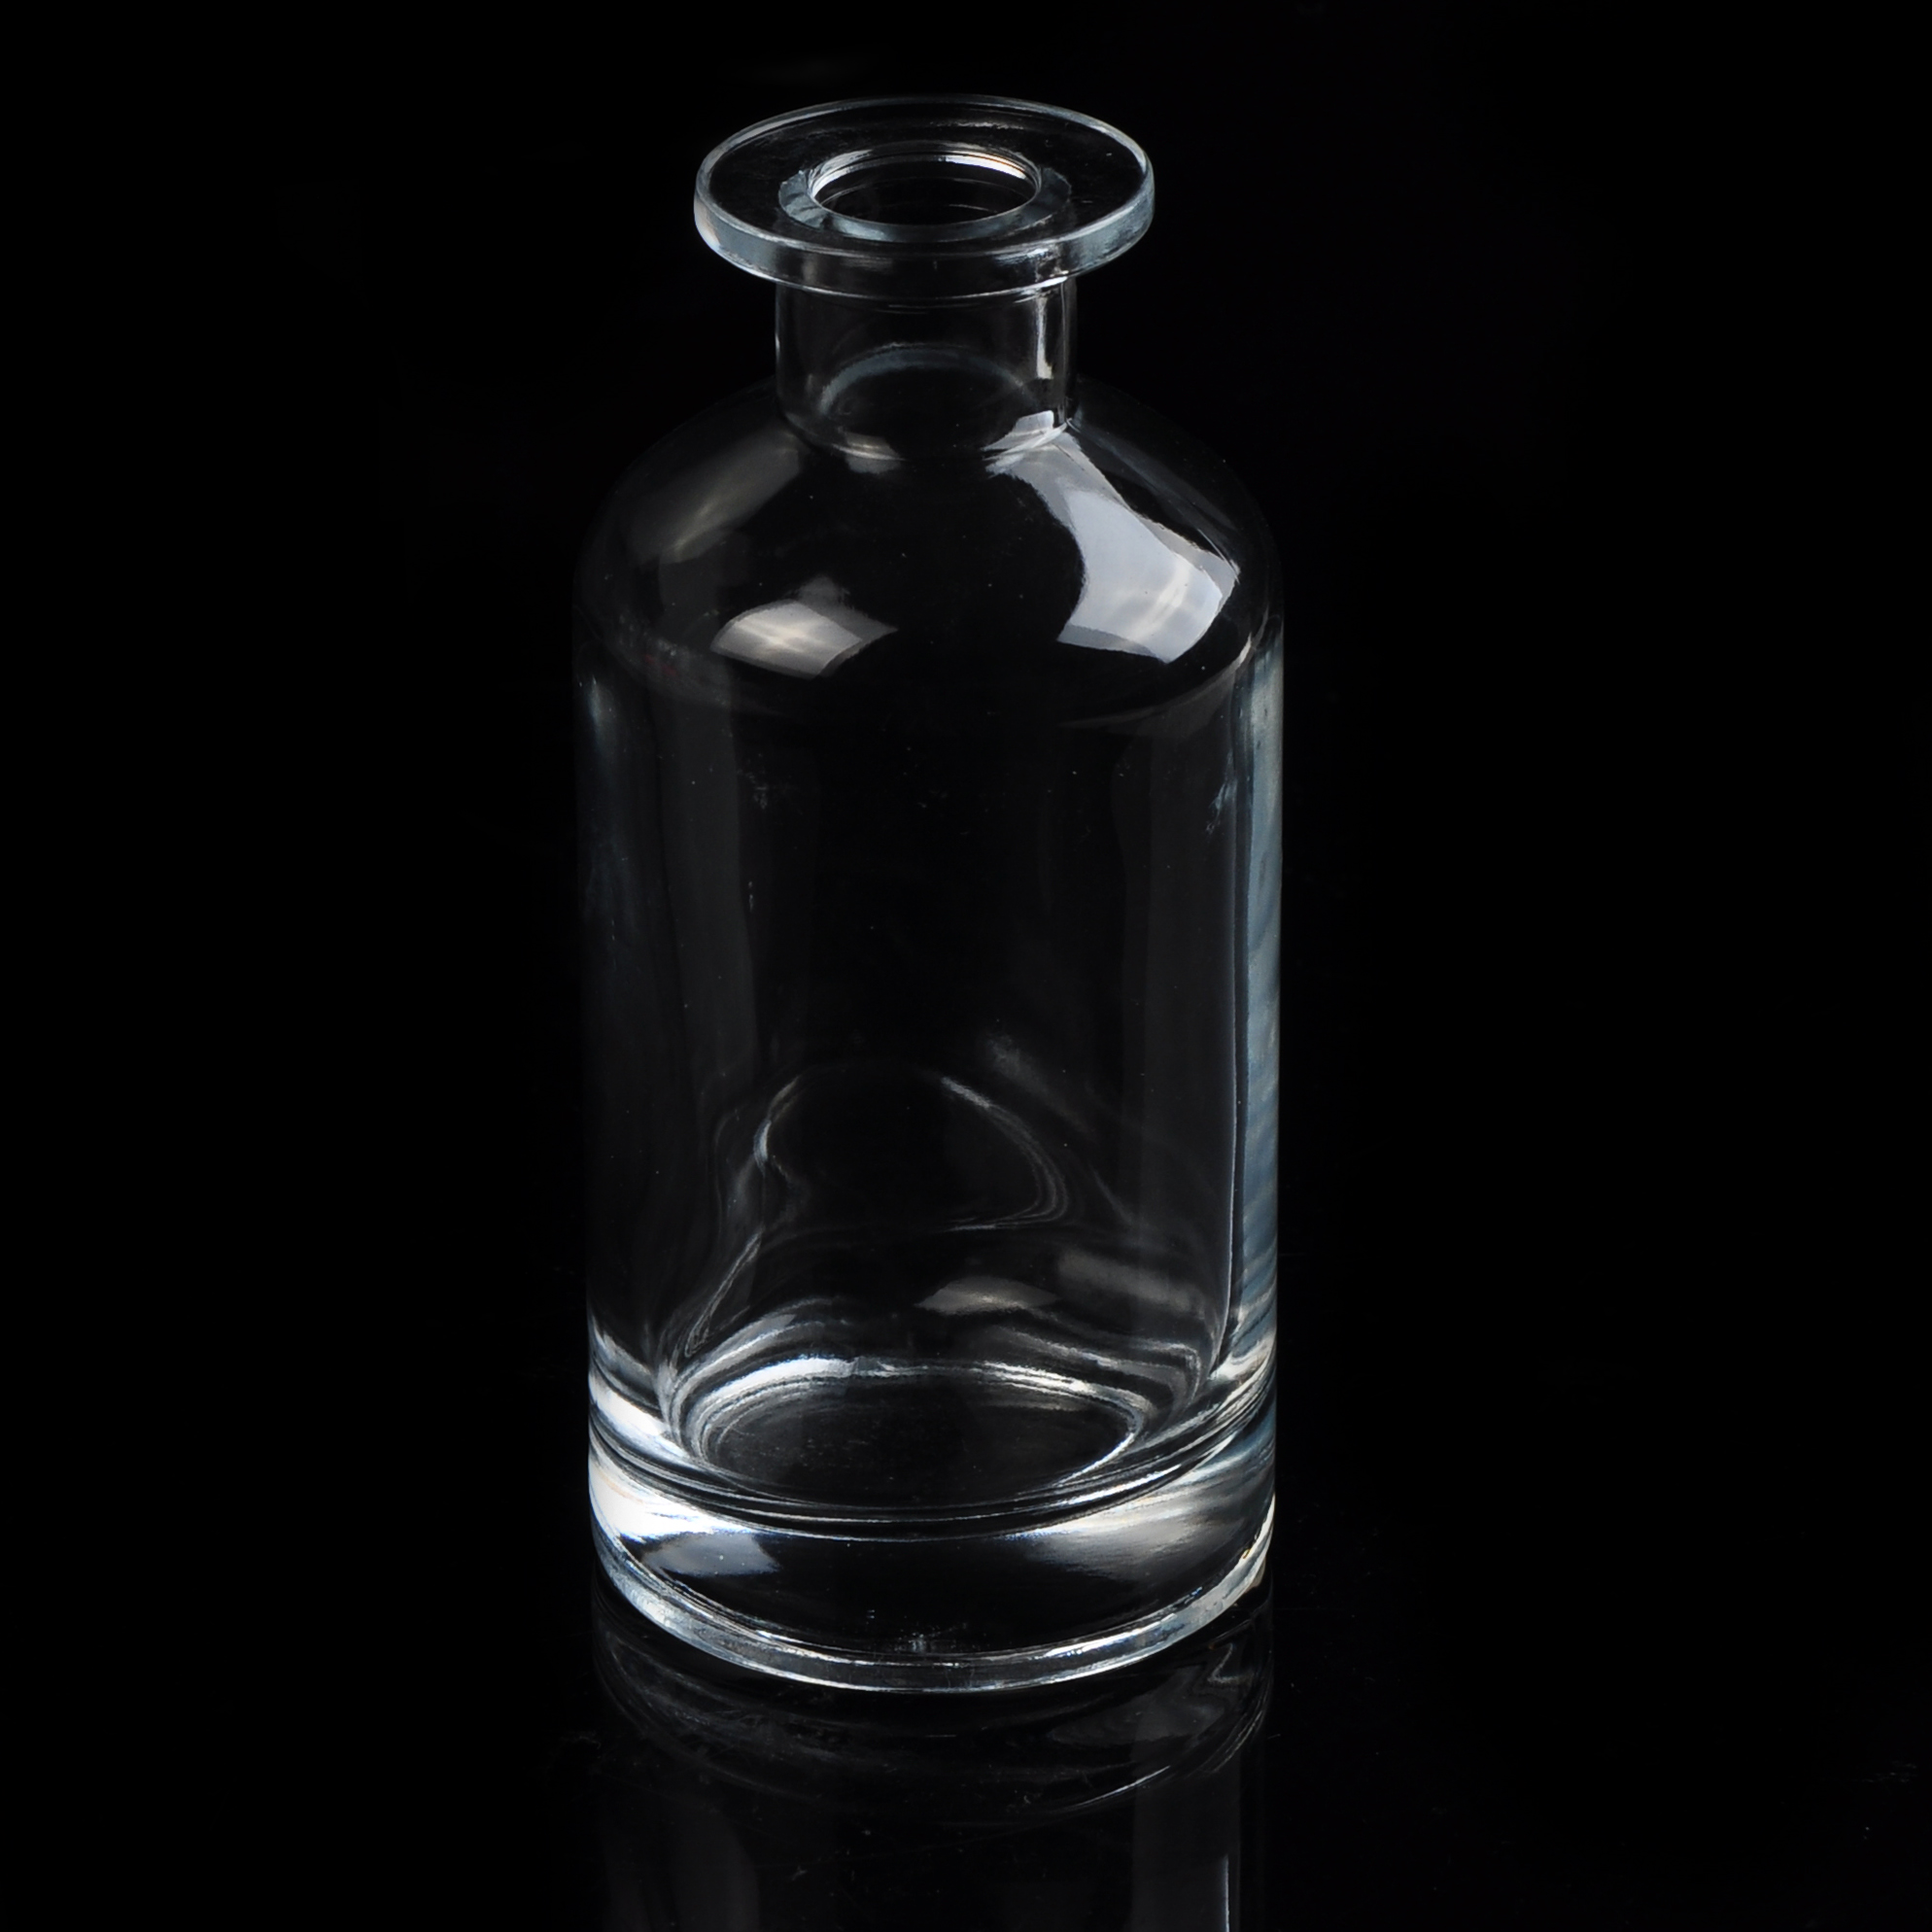 透明的玻璃香水瓶